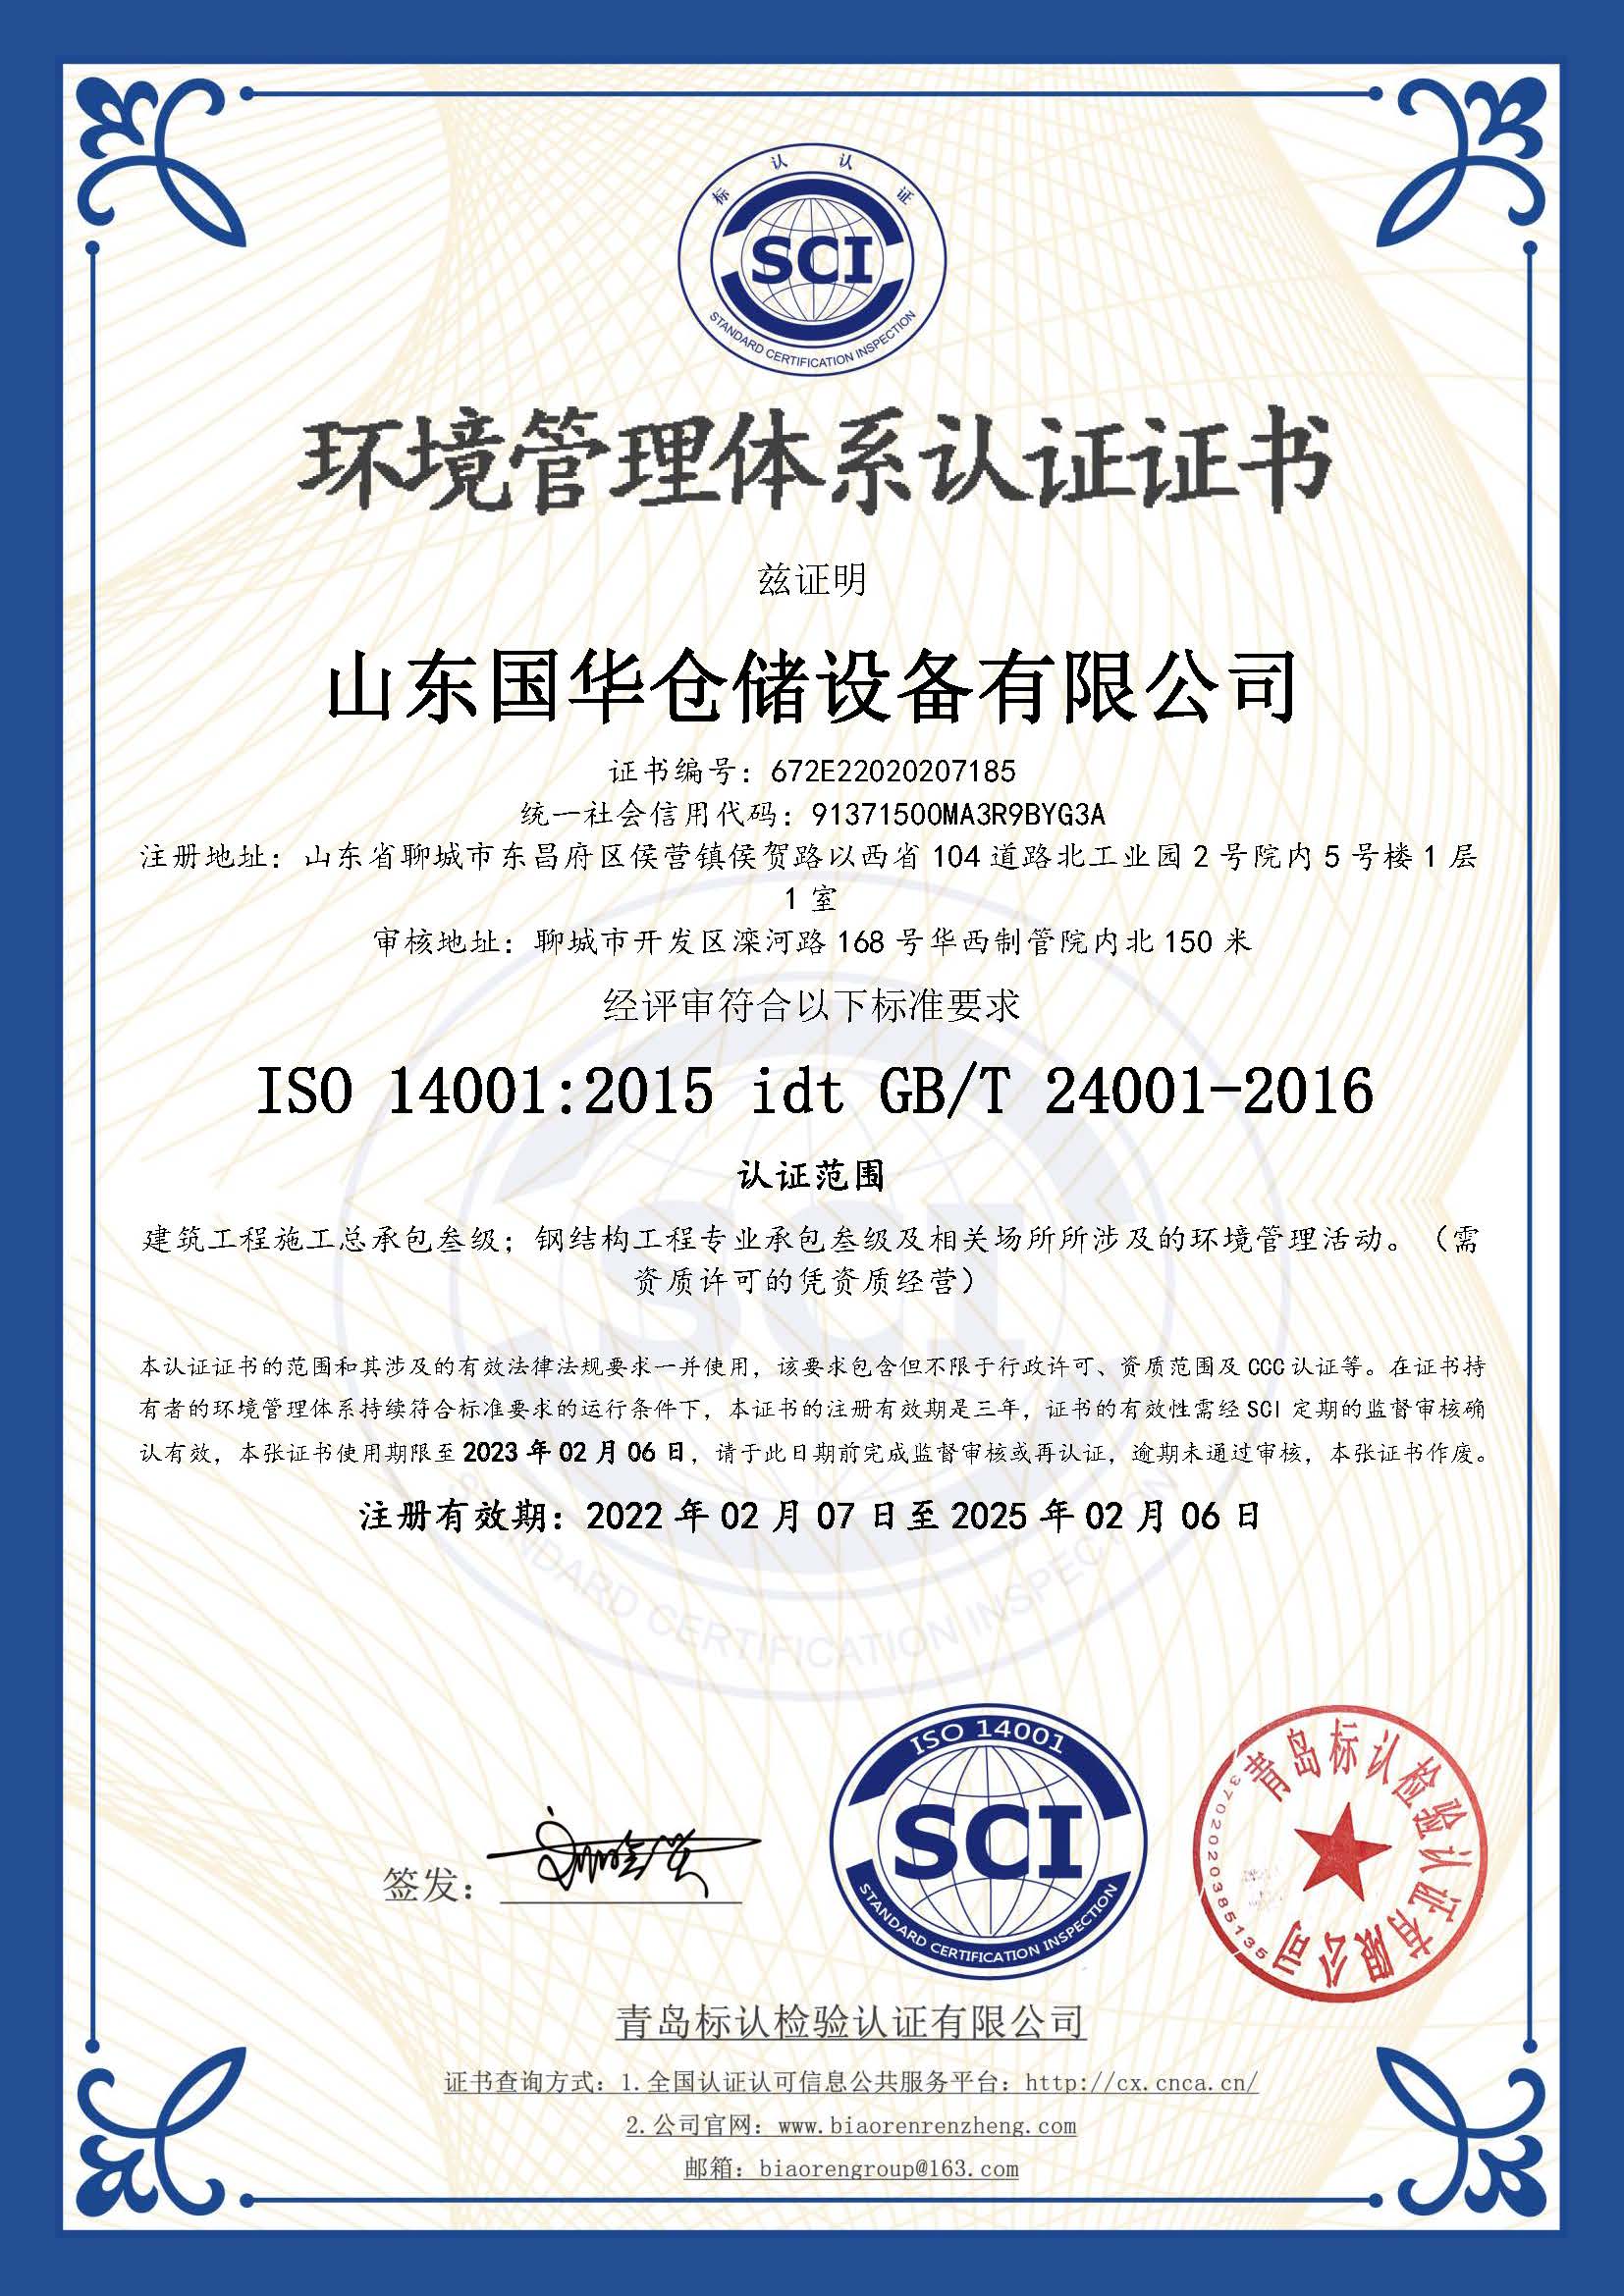 郑州钢板仓环境管理体系认证证书